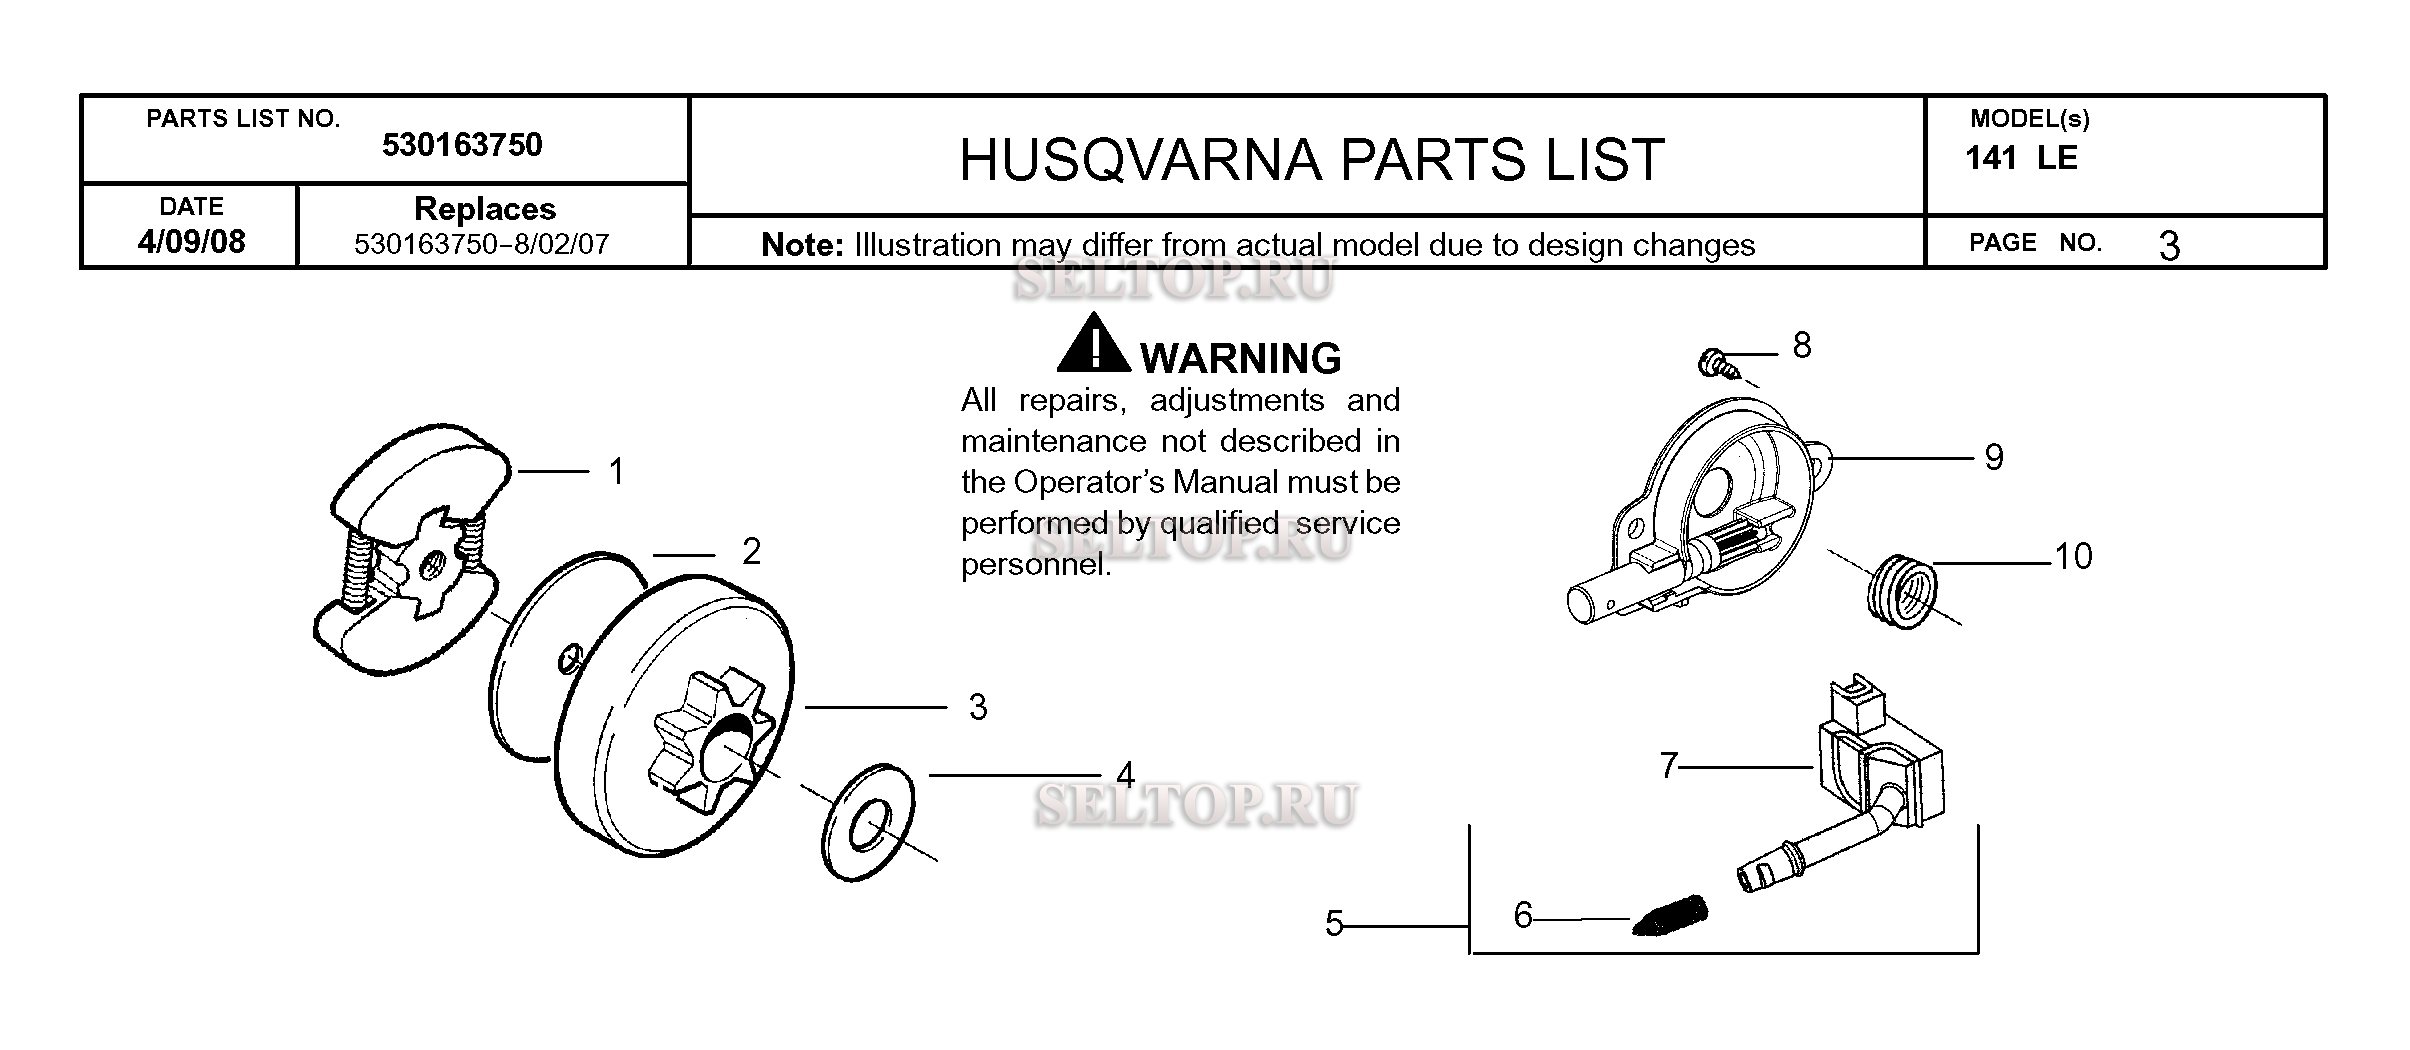 Бензопилы husqvarna (хускварна) - модели 137, 236, 240, 135, 365 характеристики, ремонт, как отличить подделку